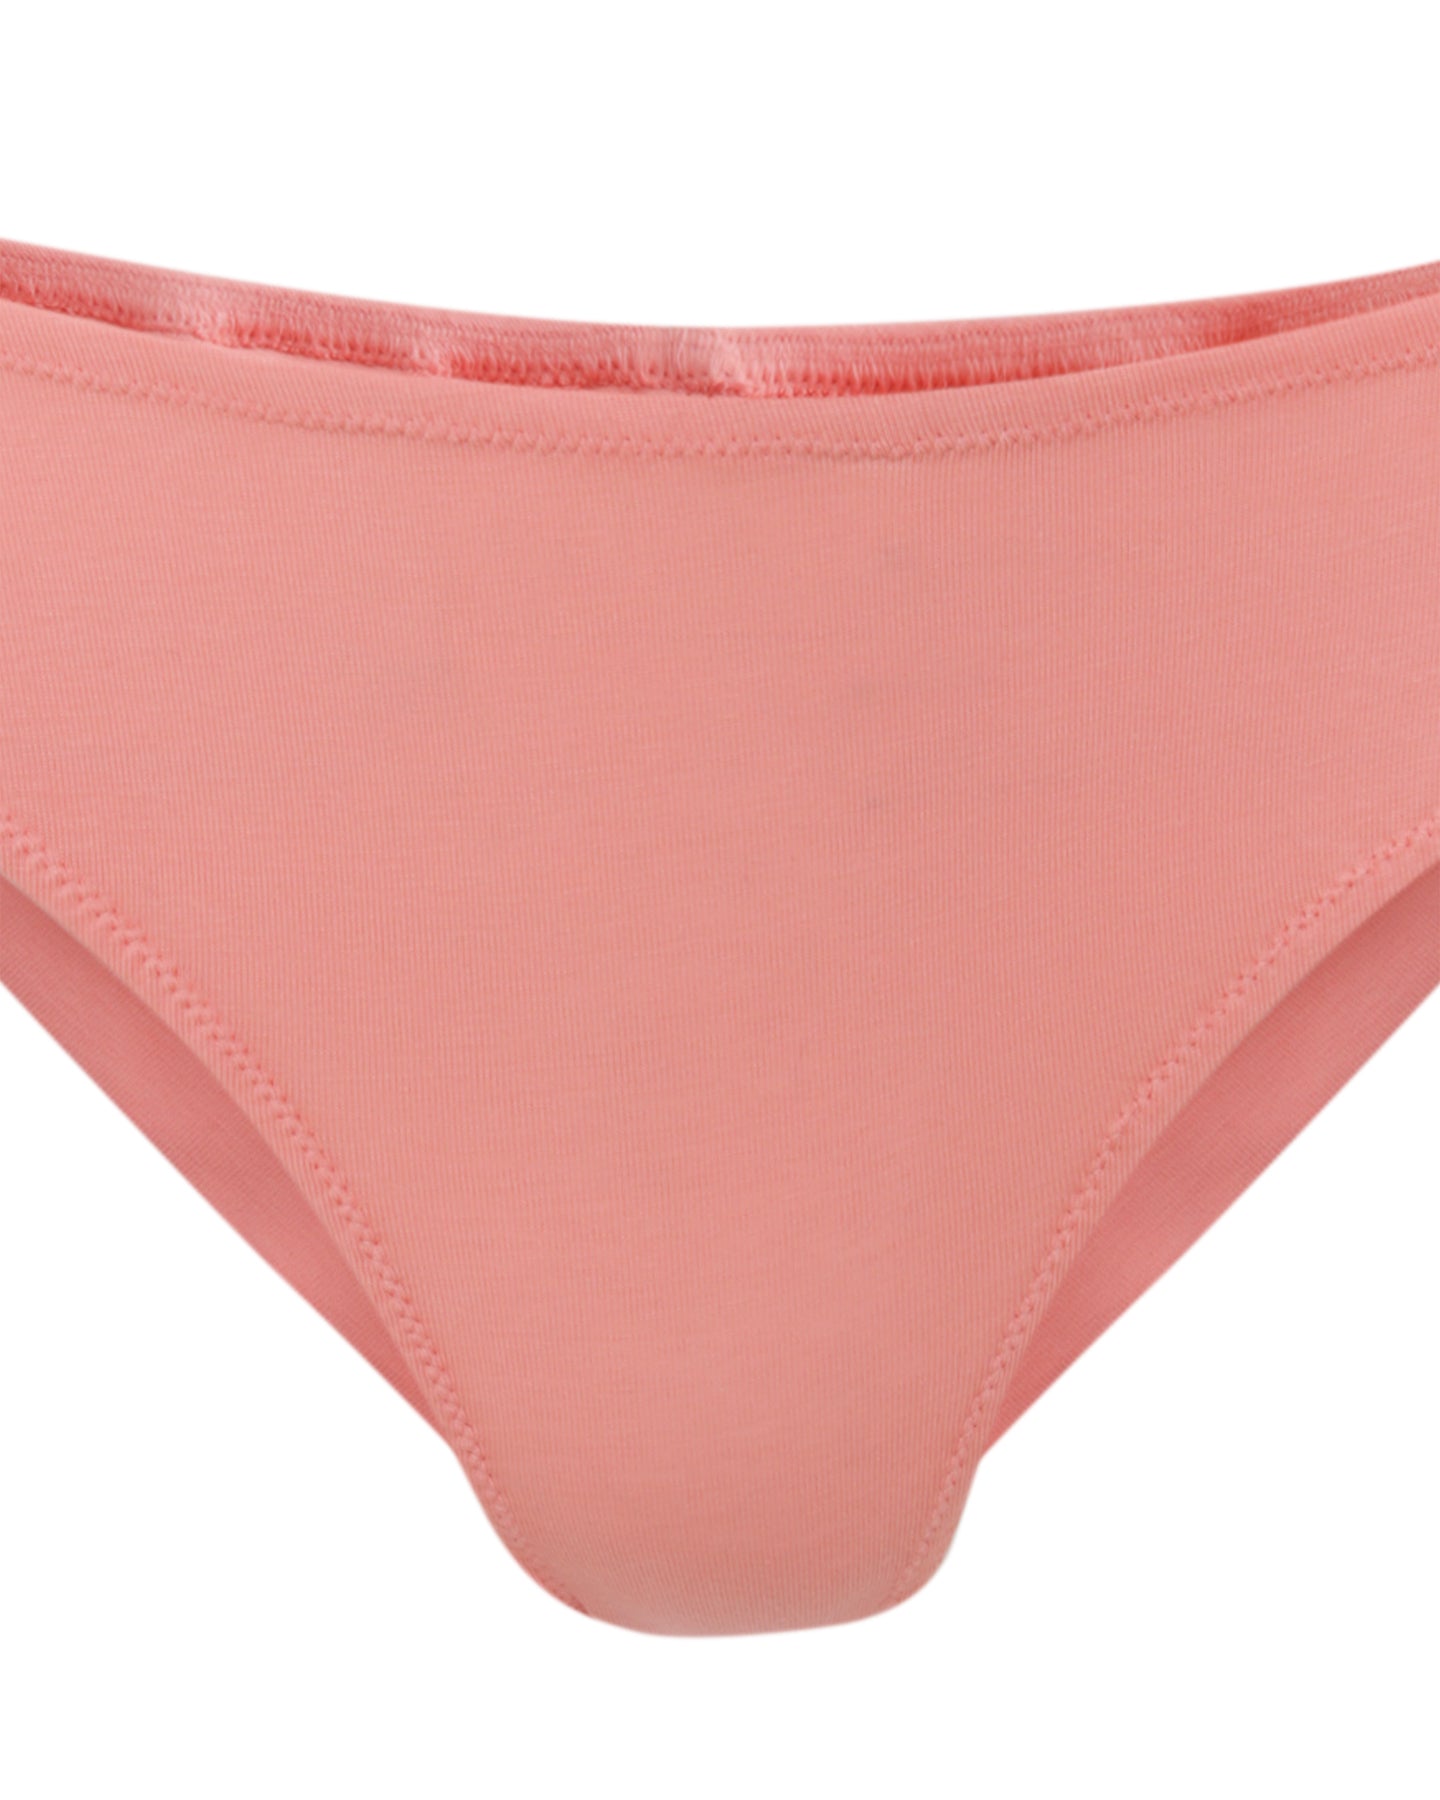 Peach organic cotton underwear | Women's underwear | briefs | Lyzawear